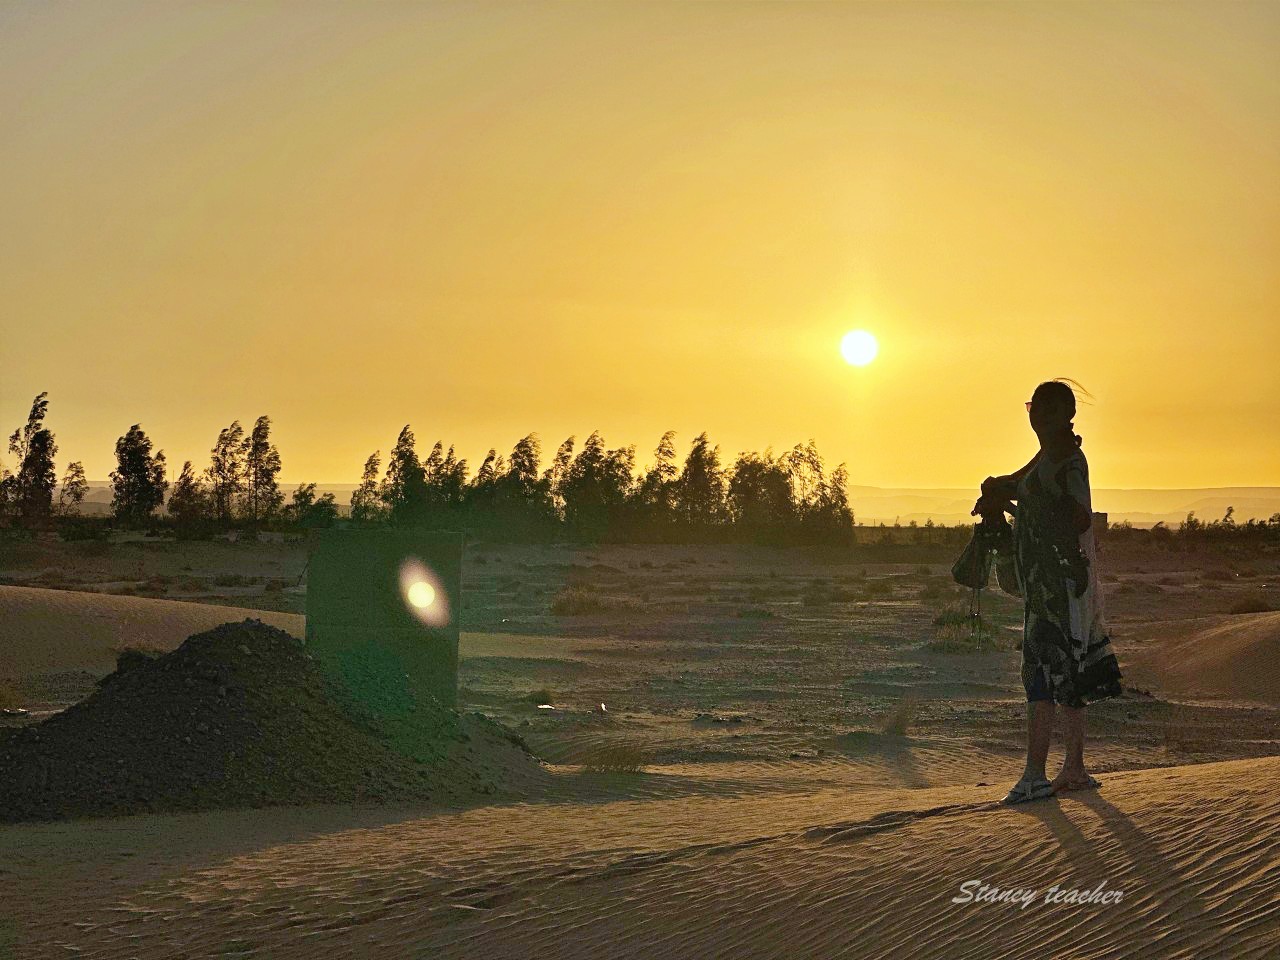 摩洛哥撒哈拉沙漠魔力奢華帳篷 Sahara Magic Luxury Camp，解鎖壯麗沙漠銀河，超浪漫沙漠日出 ｜Yalla 摩洛哥魔力之旅精緻奢華包車小團輕鬆無壓力